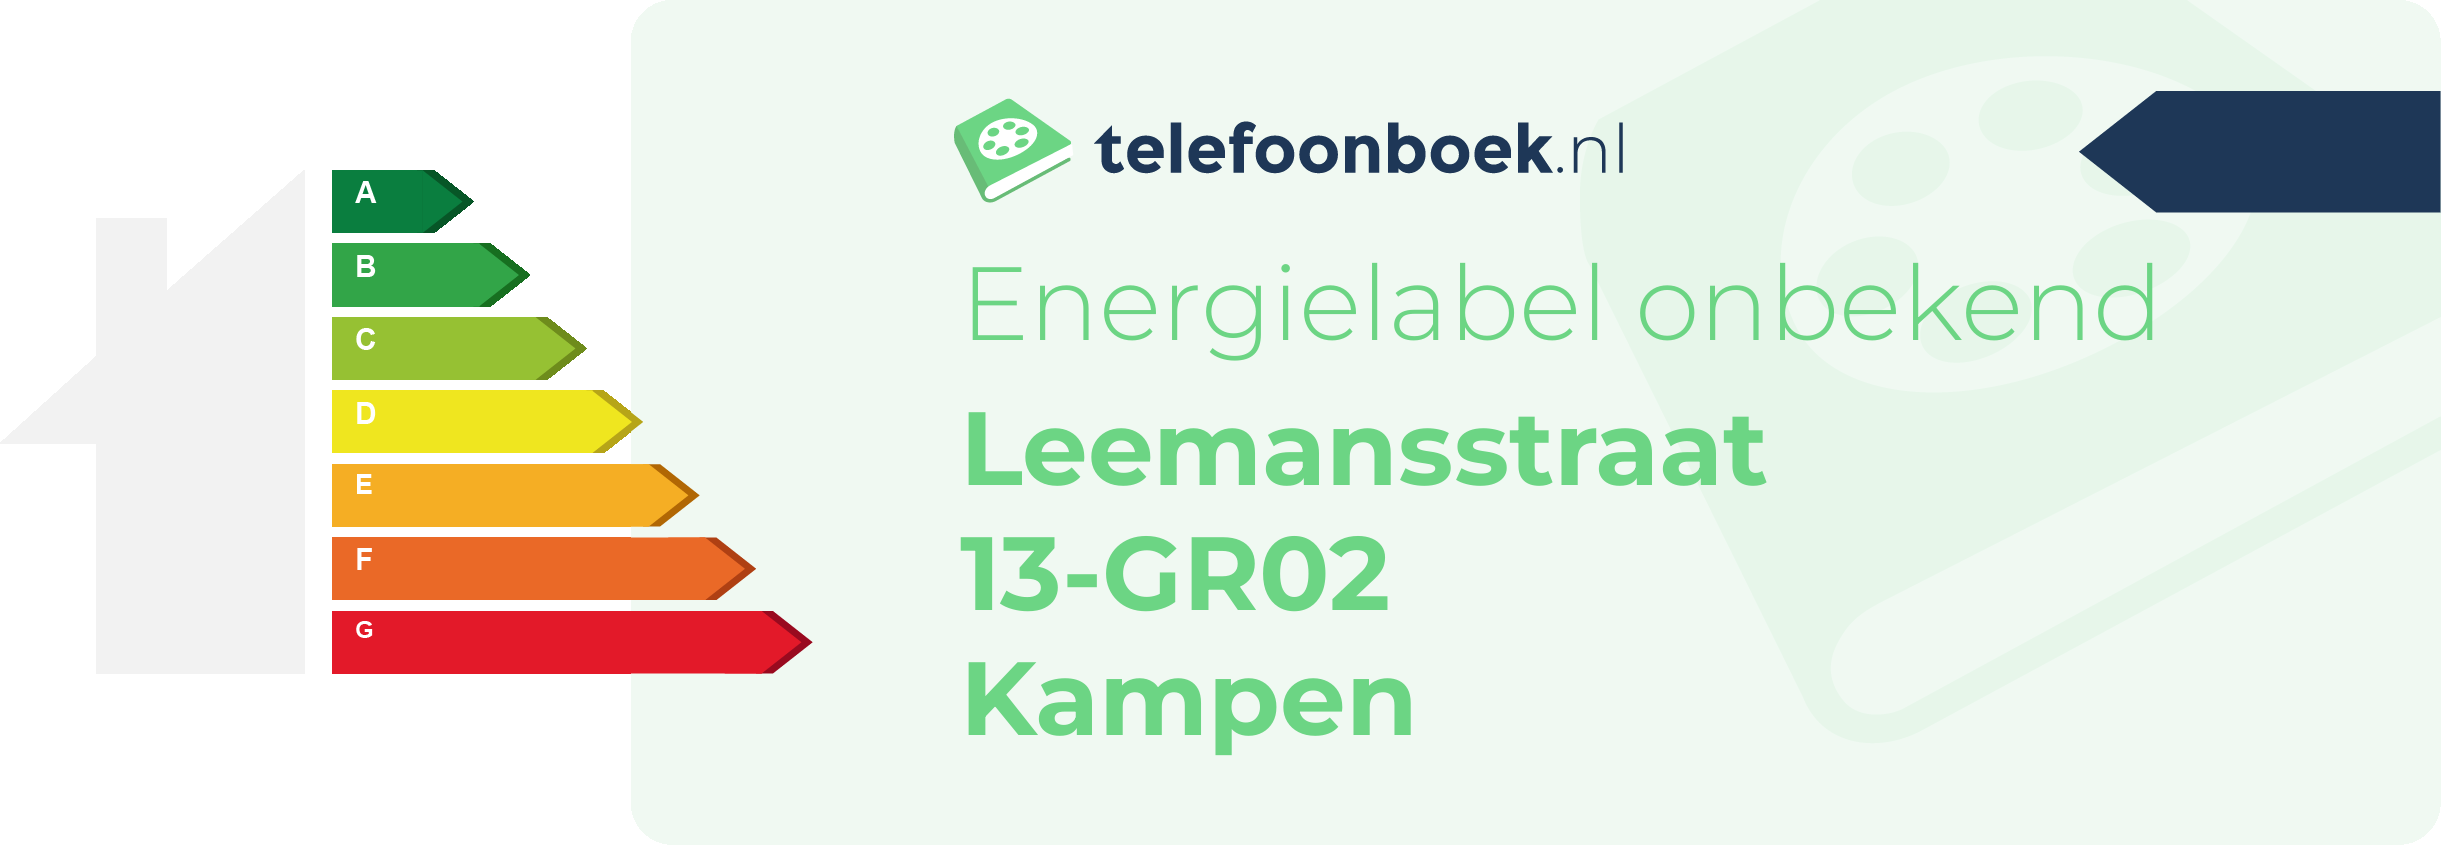 Energielabel Leemansstraat 13-GR02 Kampen